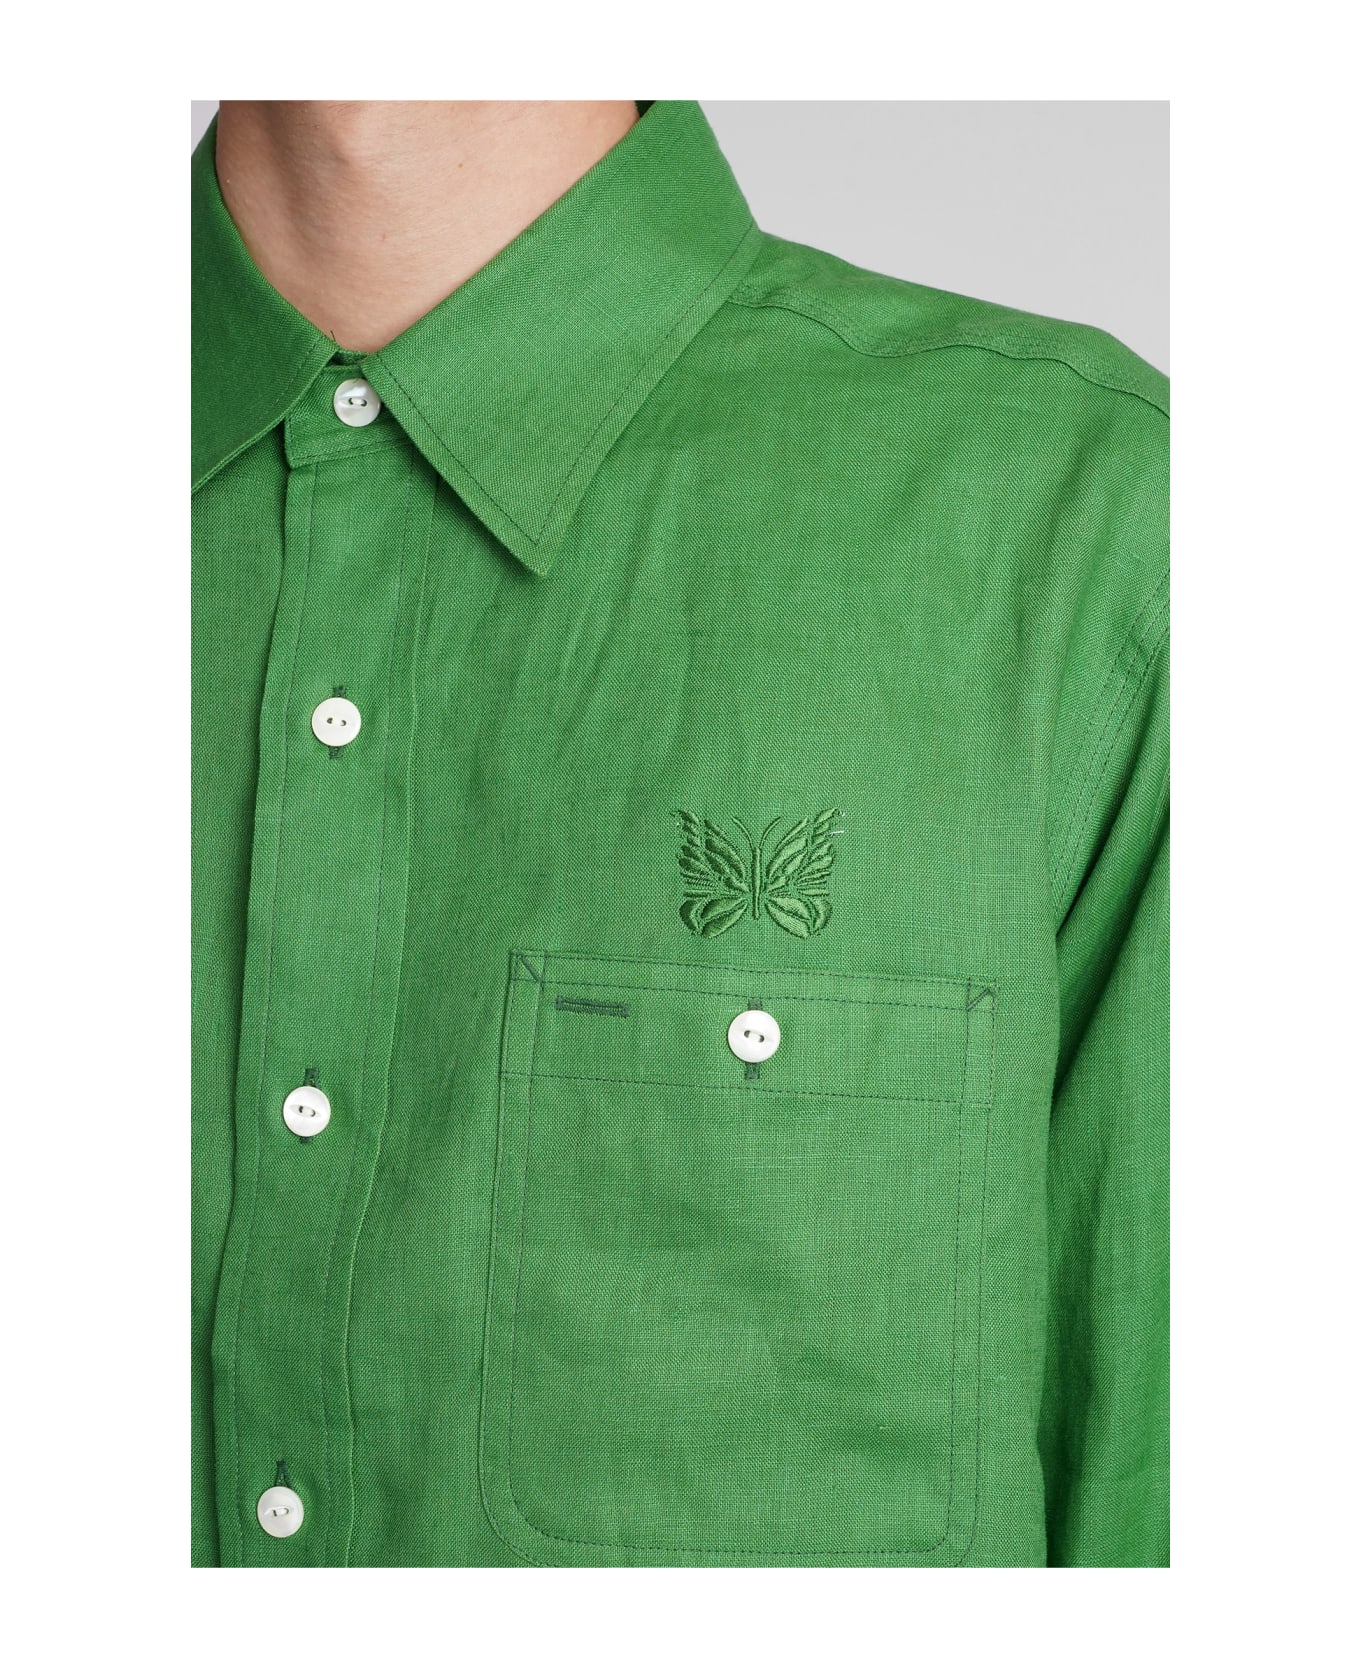 Needles Shirt In Green Linen - green